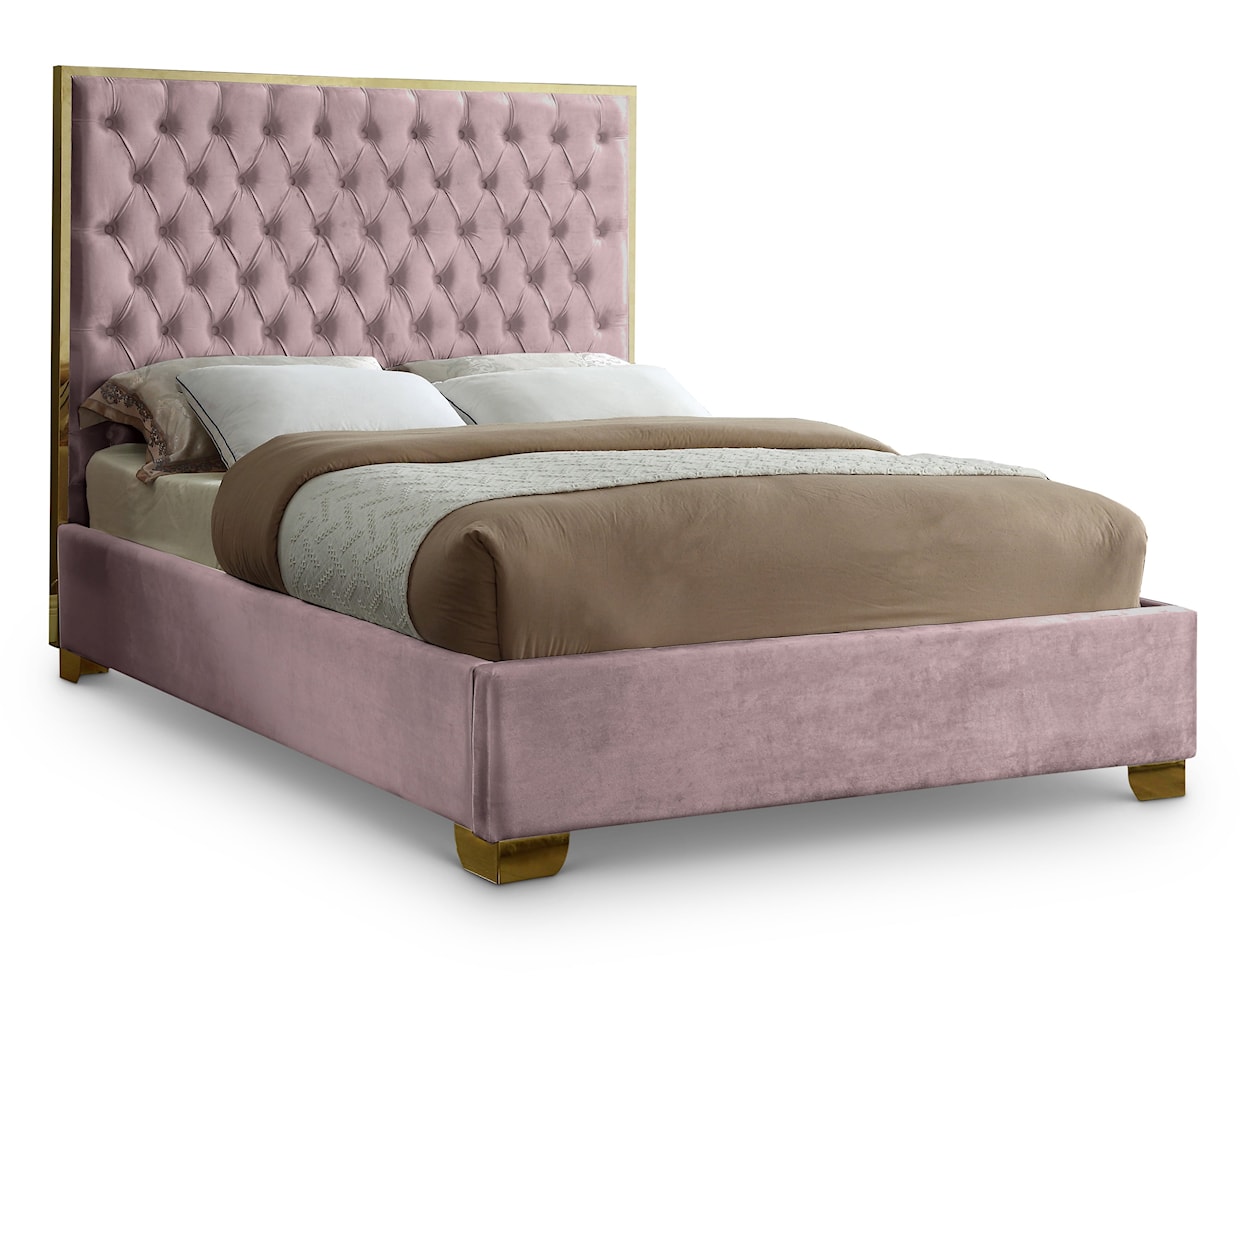 Meridian Furniture Lana King Bed